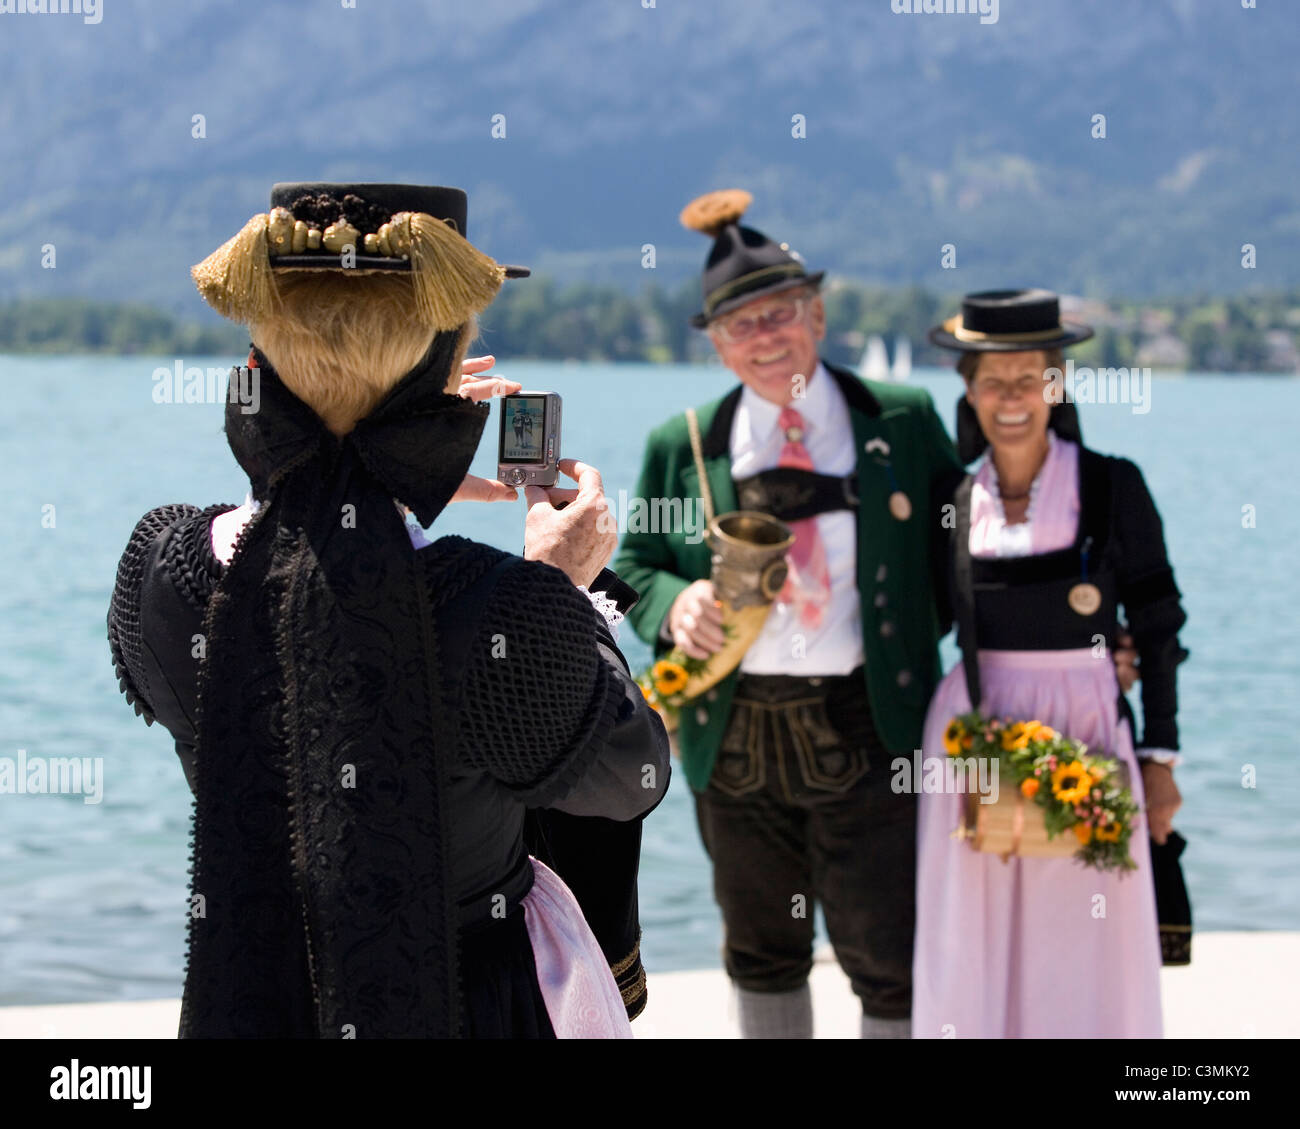 Autriche, Salzbourg, femme de prendre la photographie de couple Banque D'Images